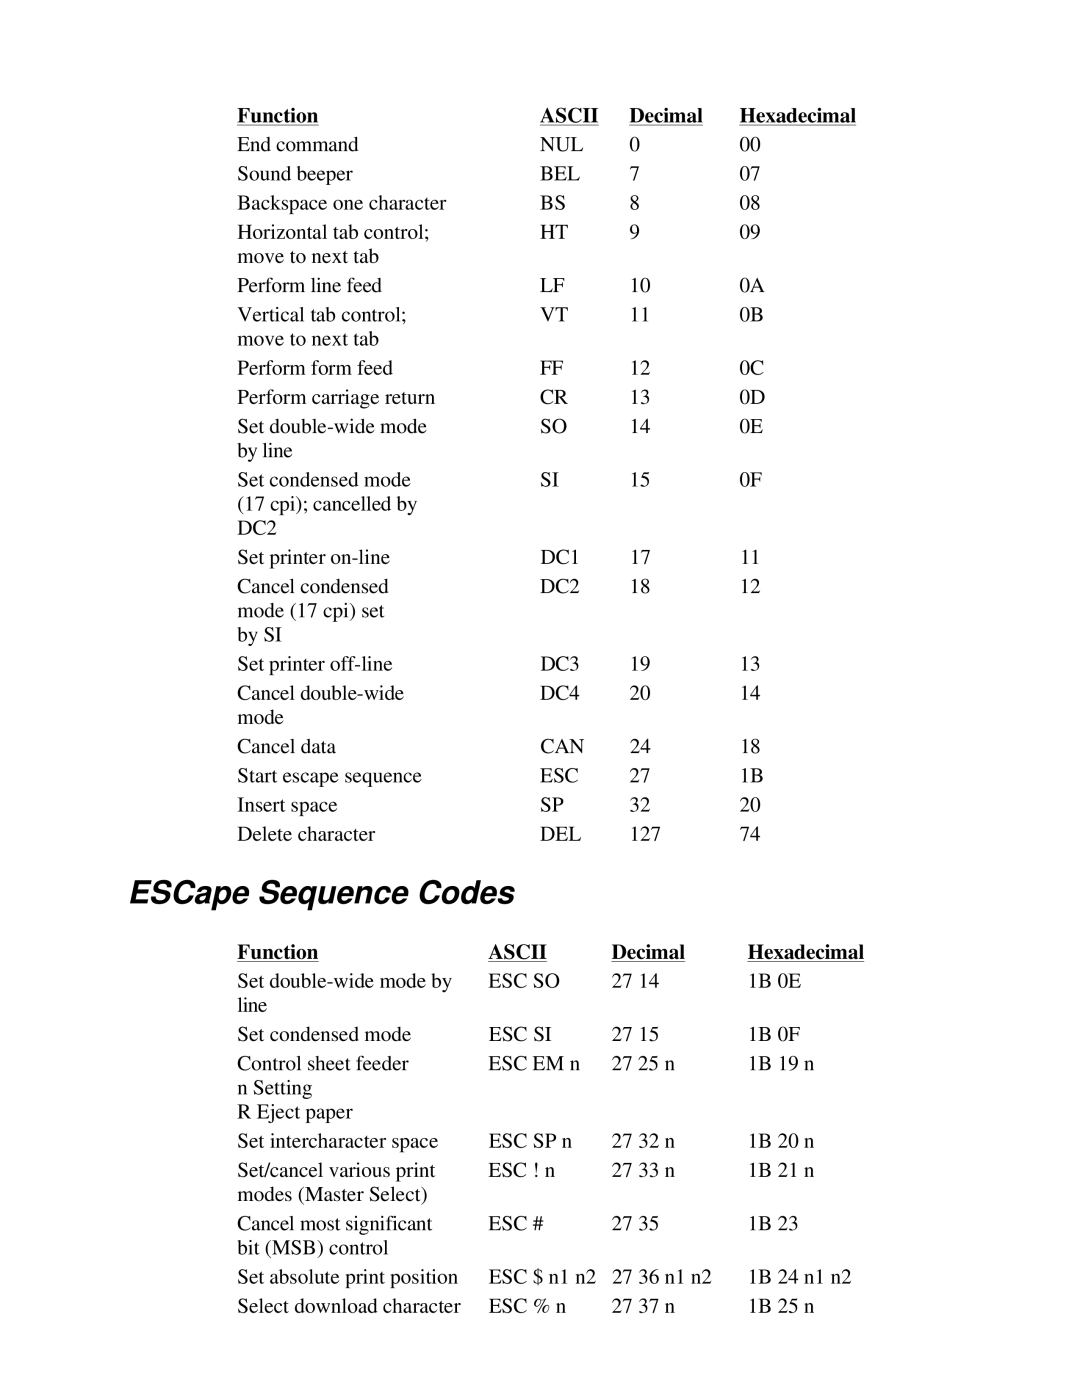 Canon BJ-230 user manual ESCape Sequence Codes, Function, Ascii, Decimal, Hexadecimal 